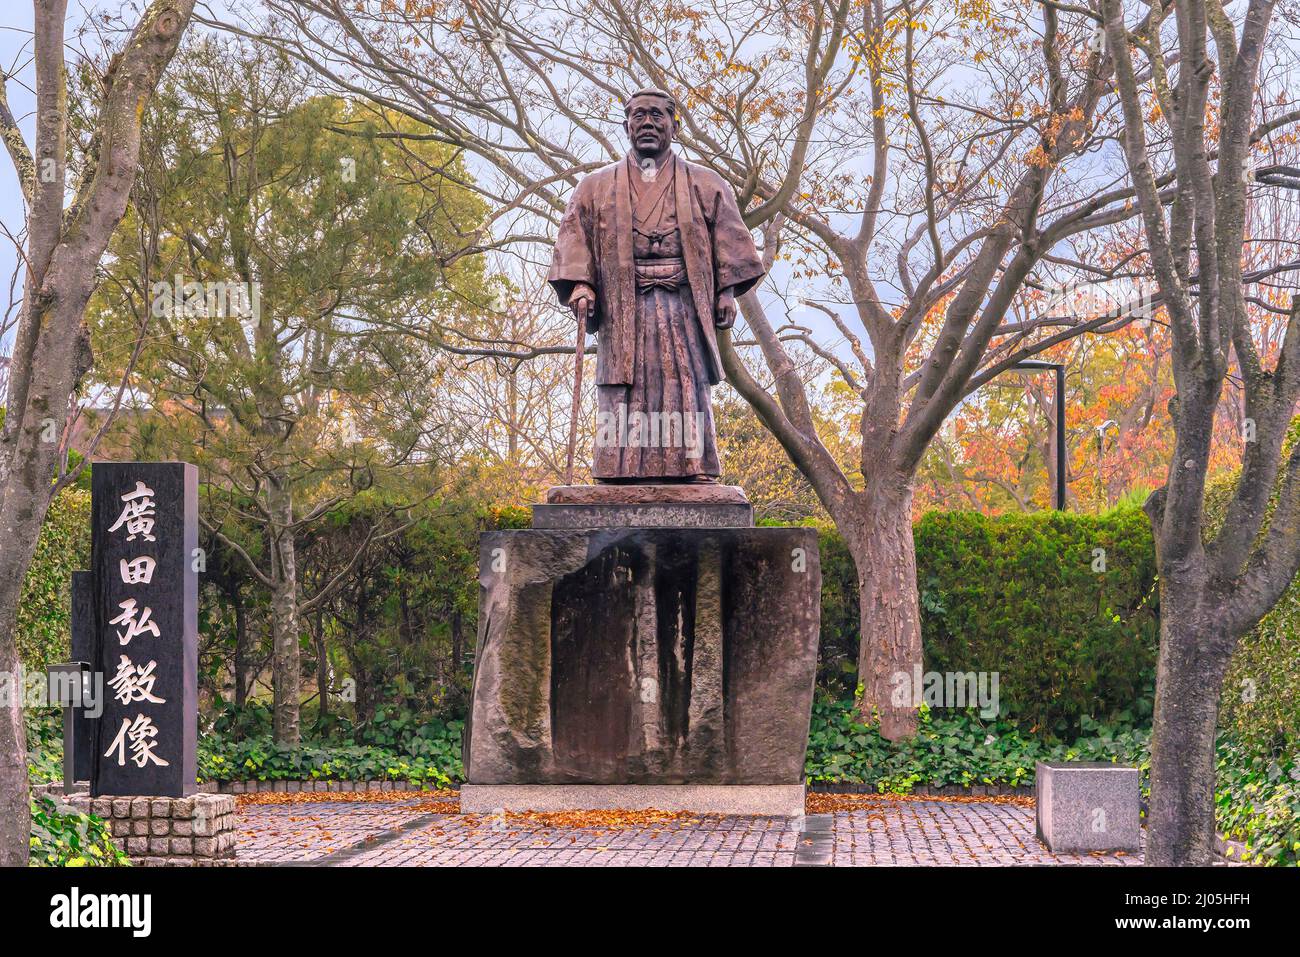 fukuoka, kyushu - aprile 09 2021: Statua eretta dalla compagnia petrolifera Idemitsu nel parco di Ōhori raffigurante l'antico primo Ministro giapponese giustiziato per la guerra Foto Stock